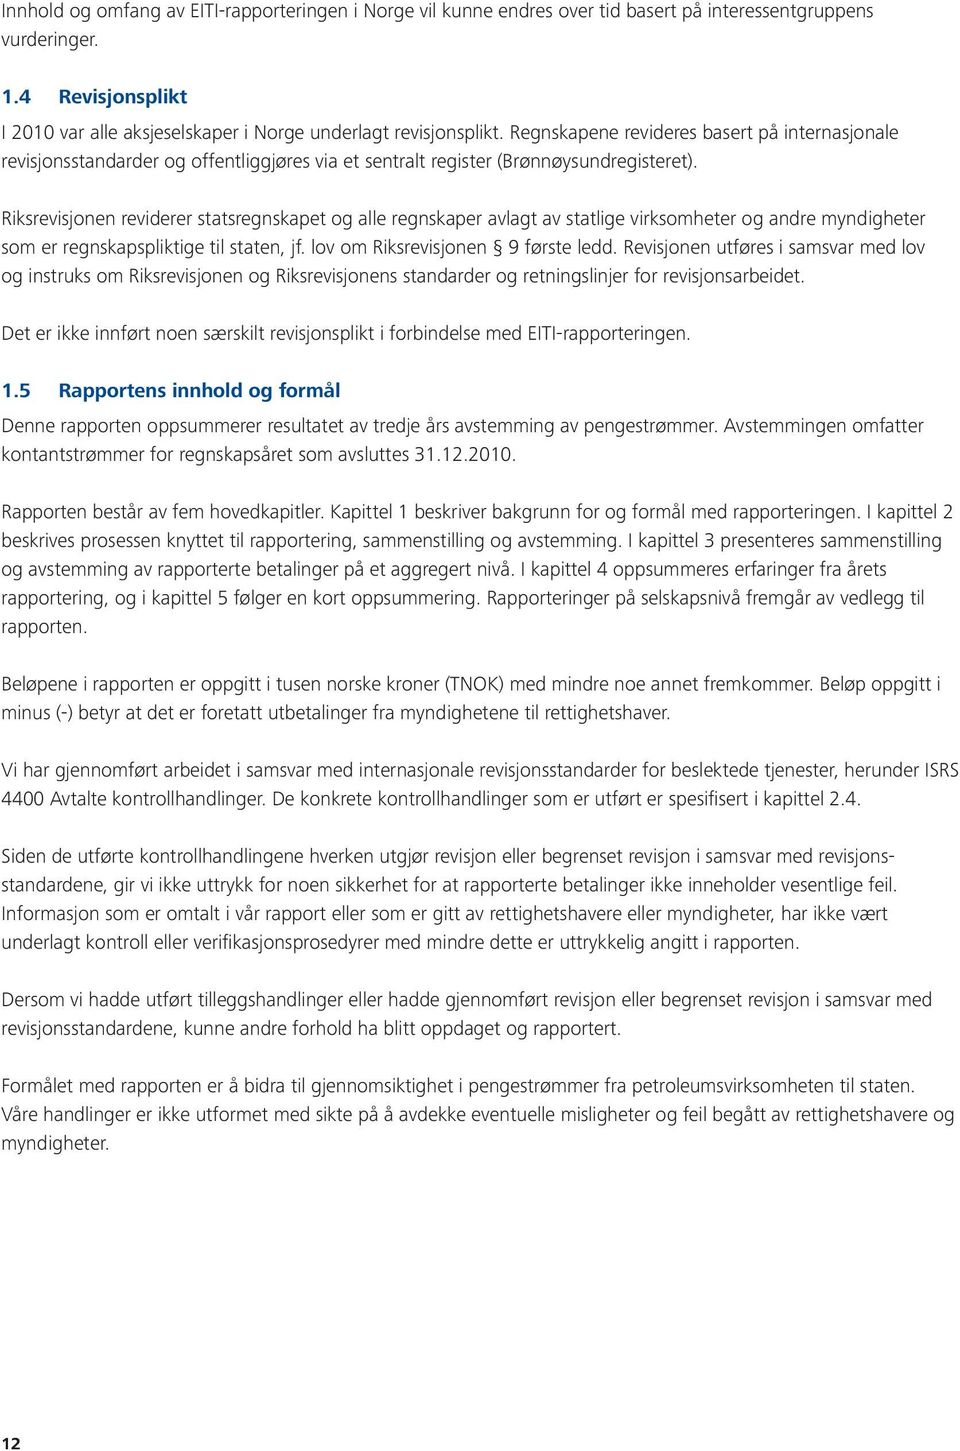 Regnskapene revideres basert på internasjonale revisjonsstandarder og offentliggjøres via et sentralt register (Brønnøysundregisteret).